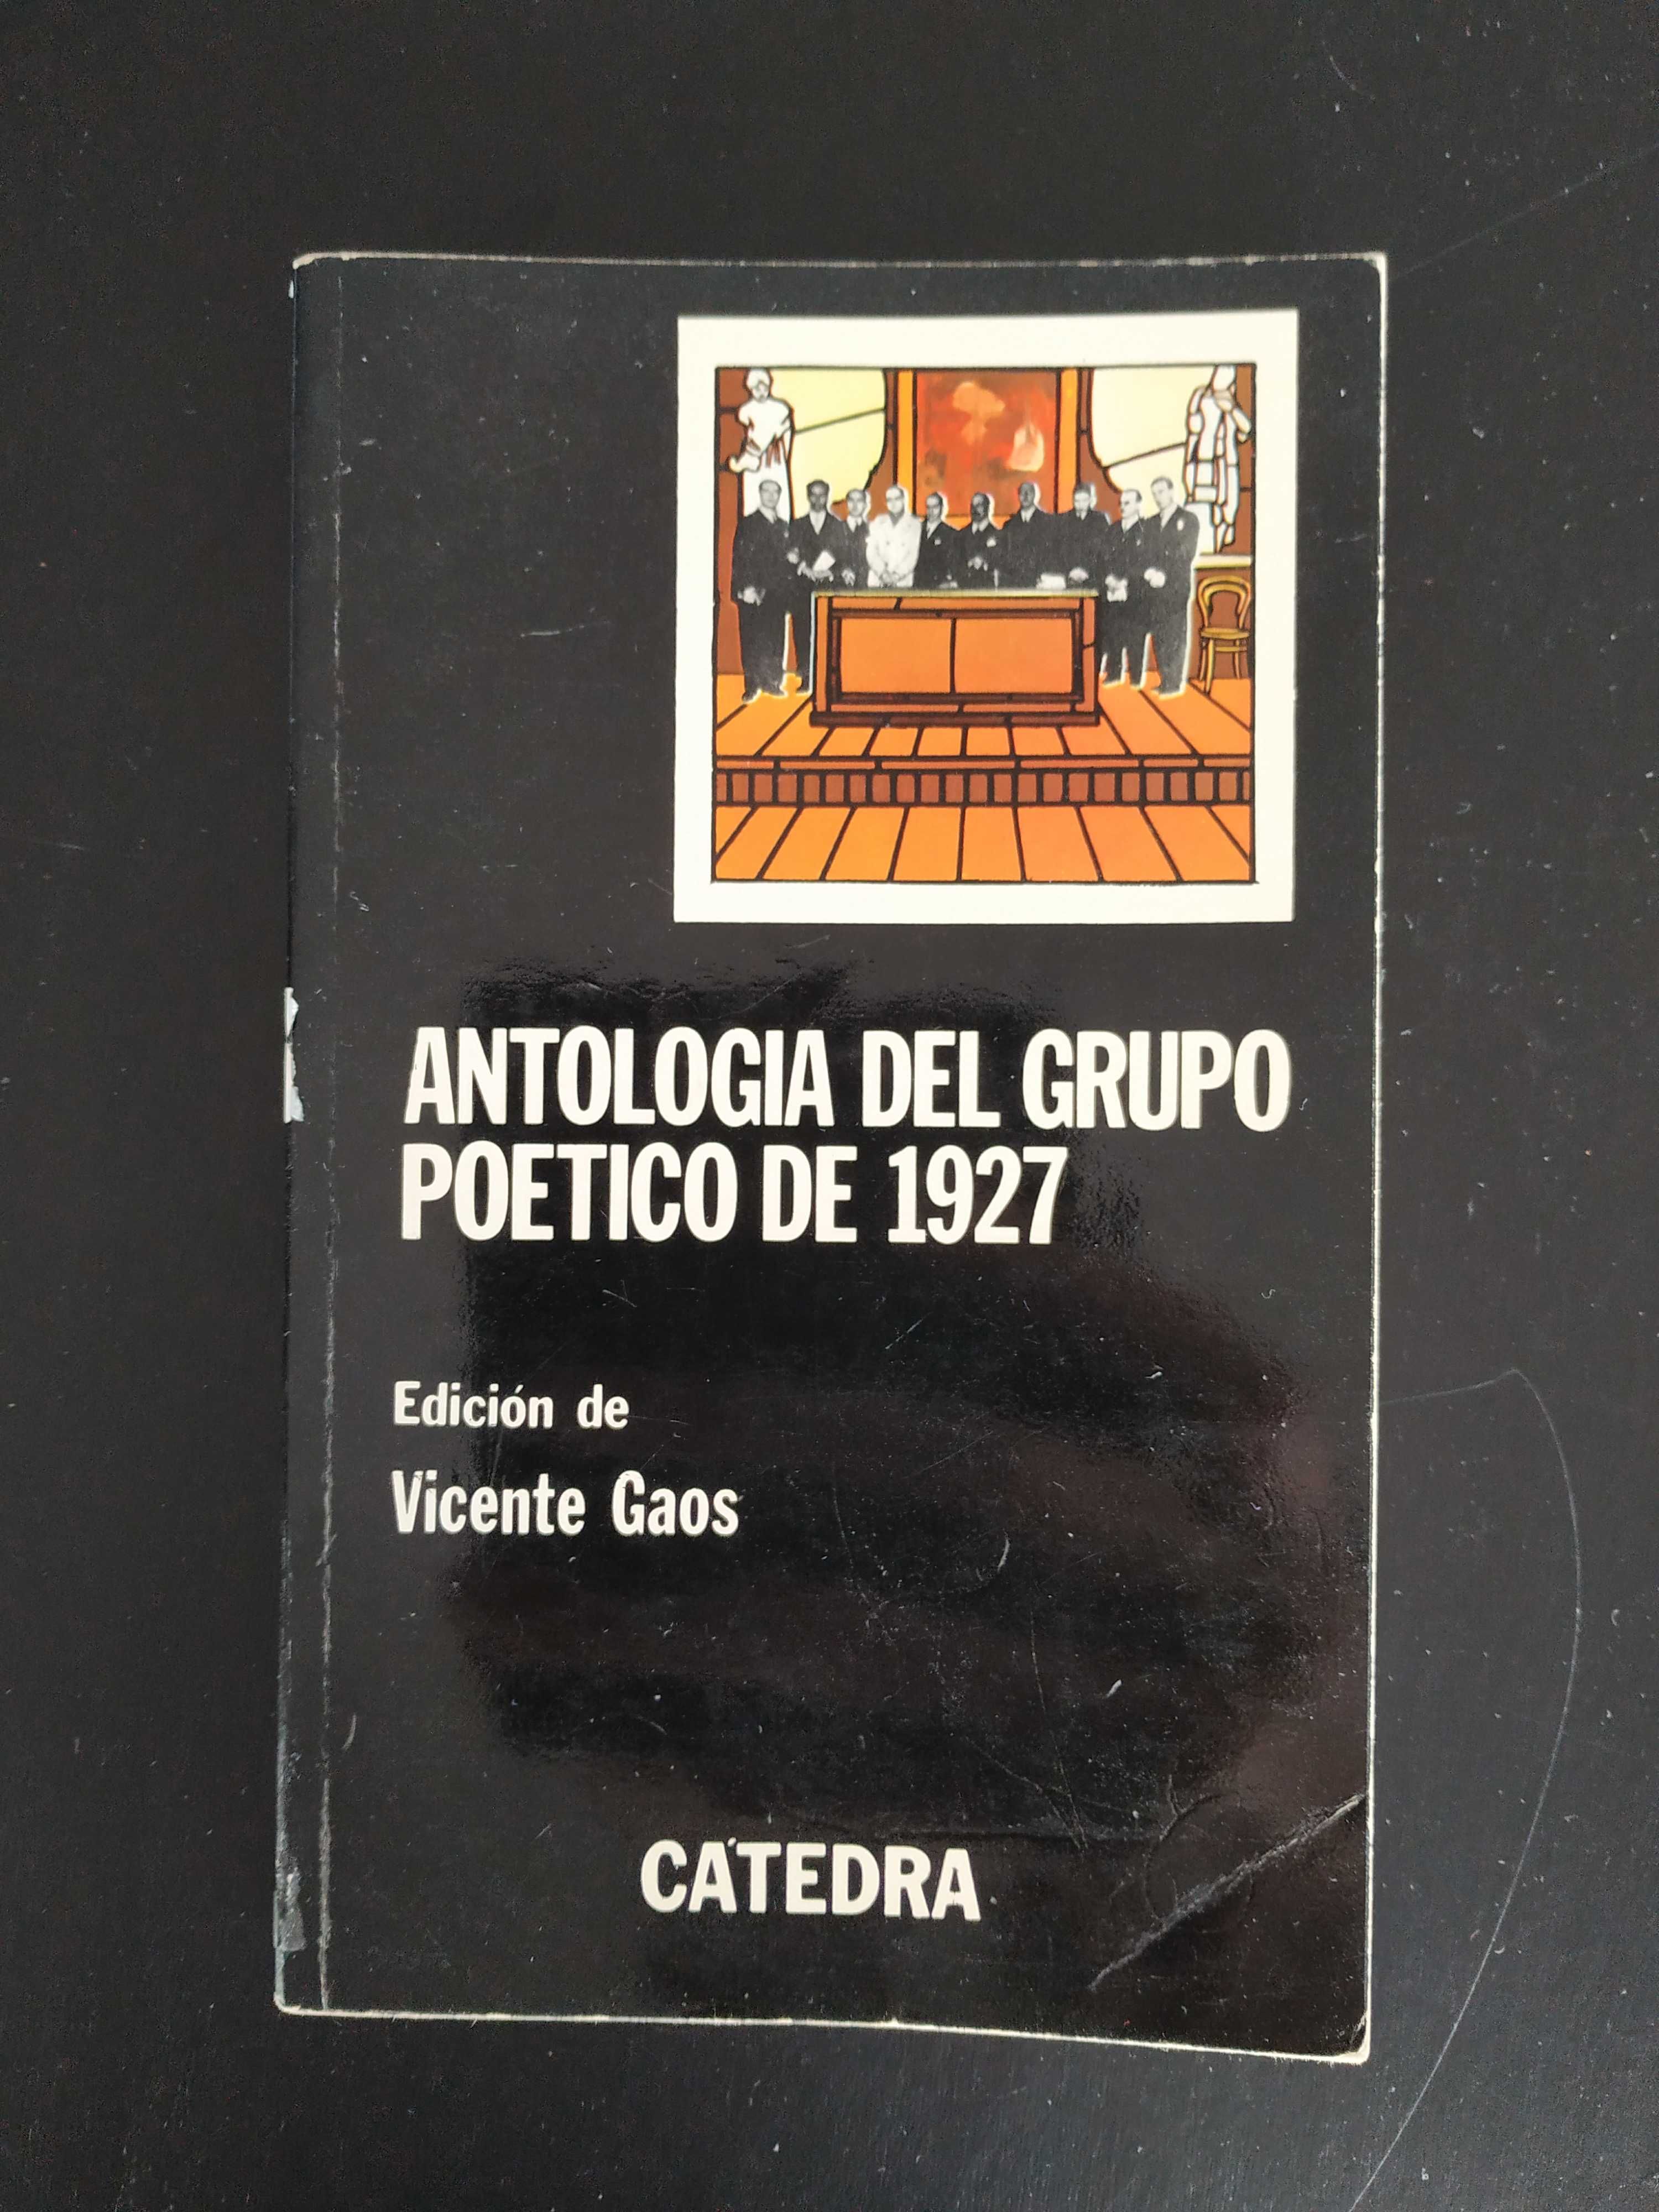 Antropologia del grupo poetico de 1927, hiszpańskojęzyczna